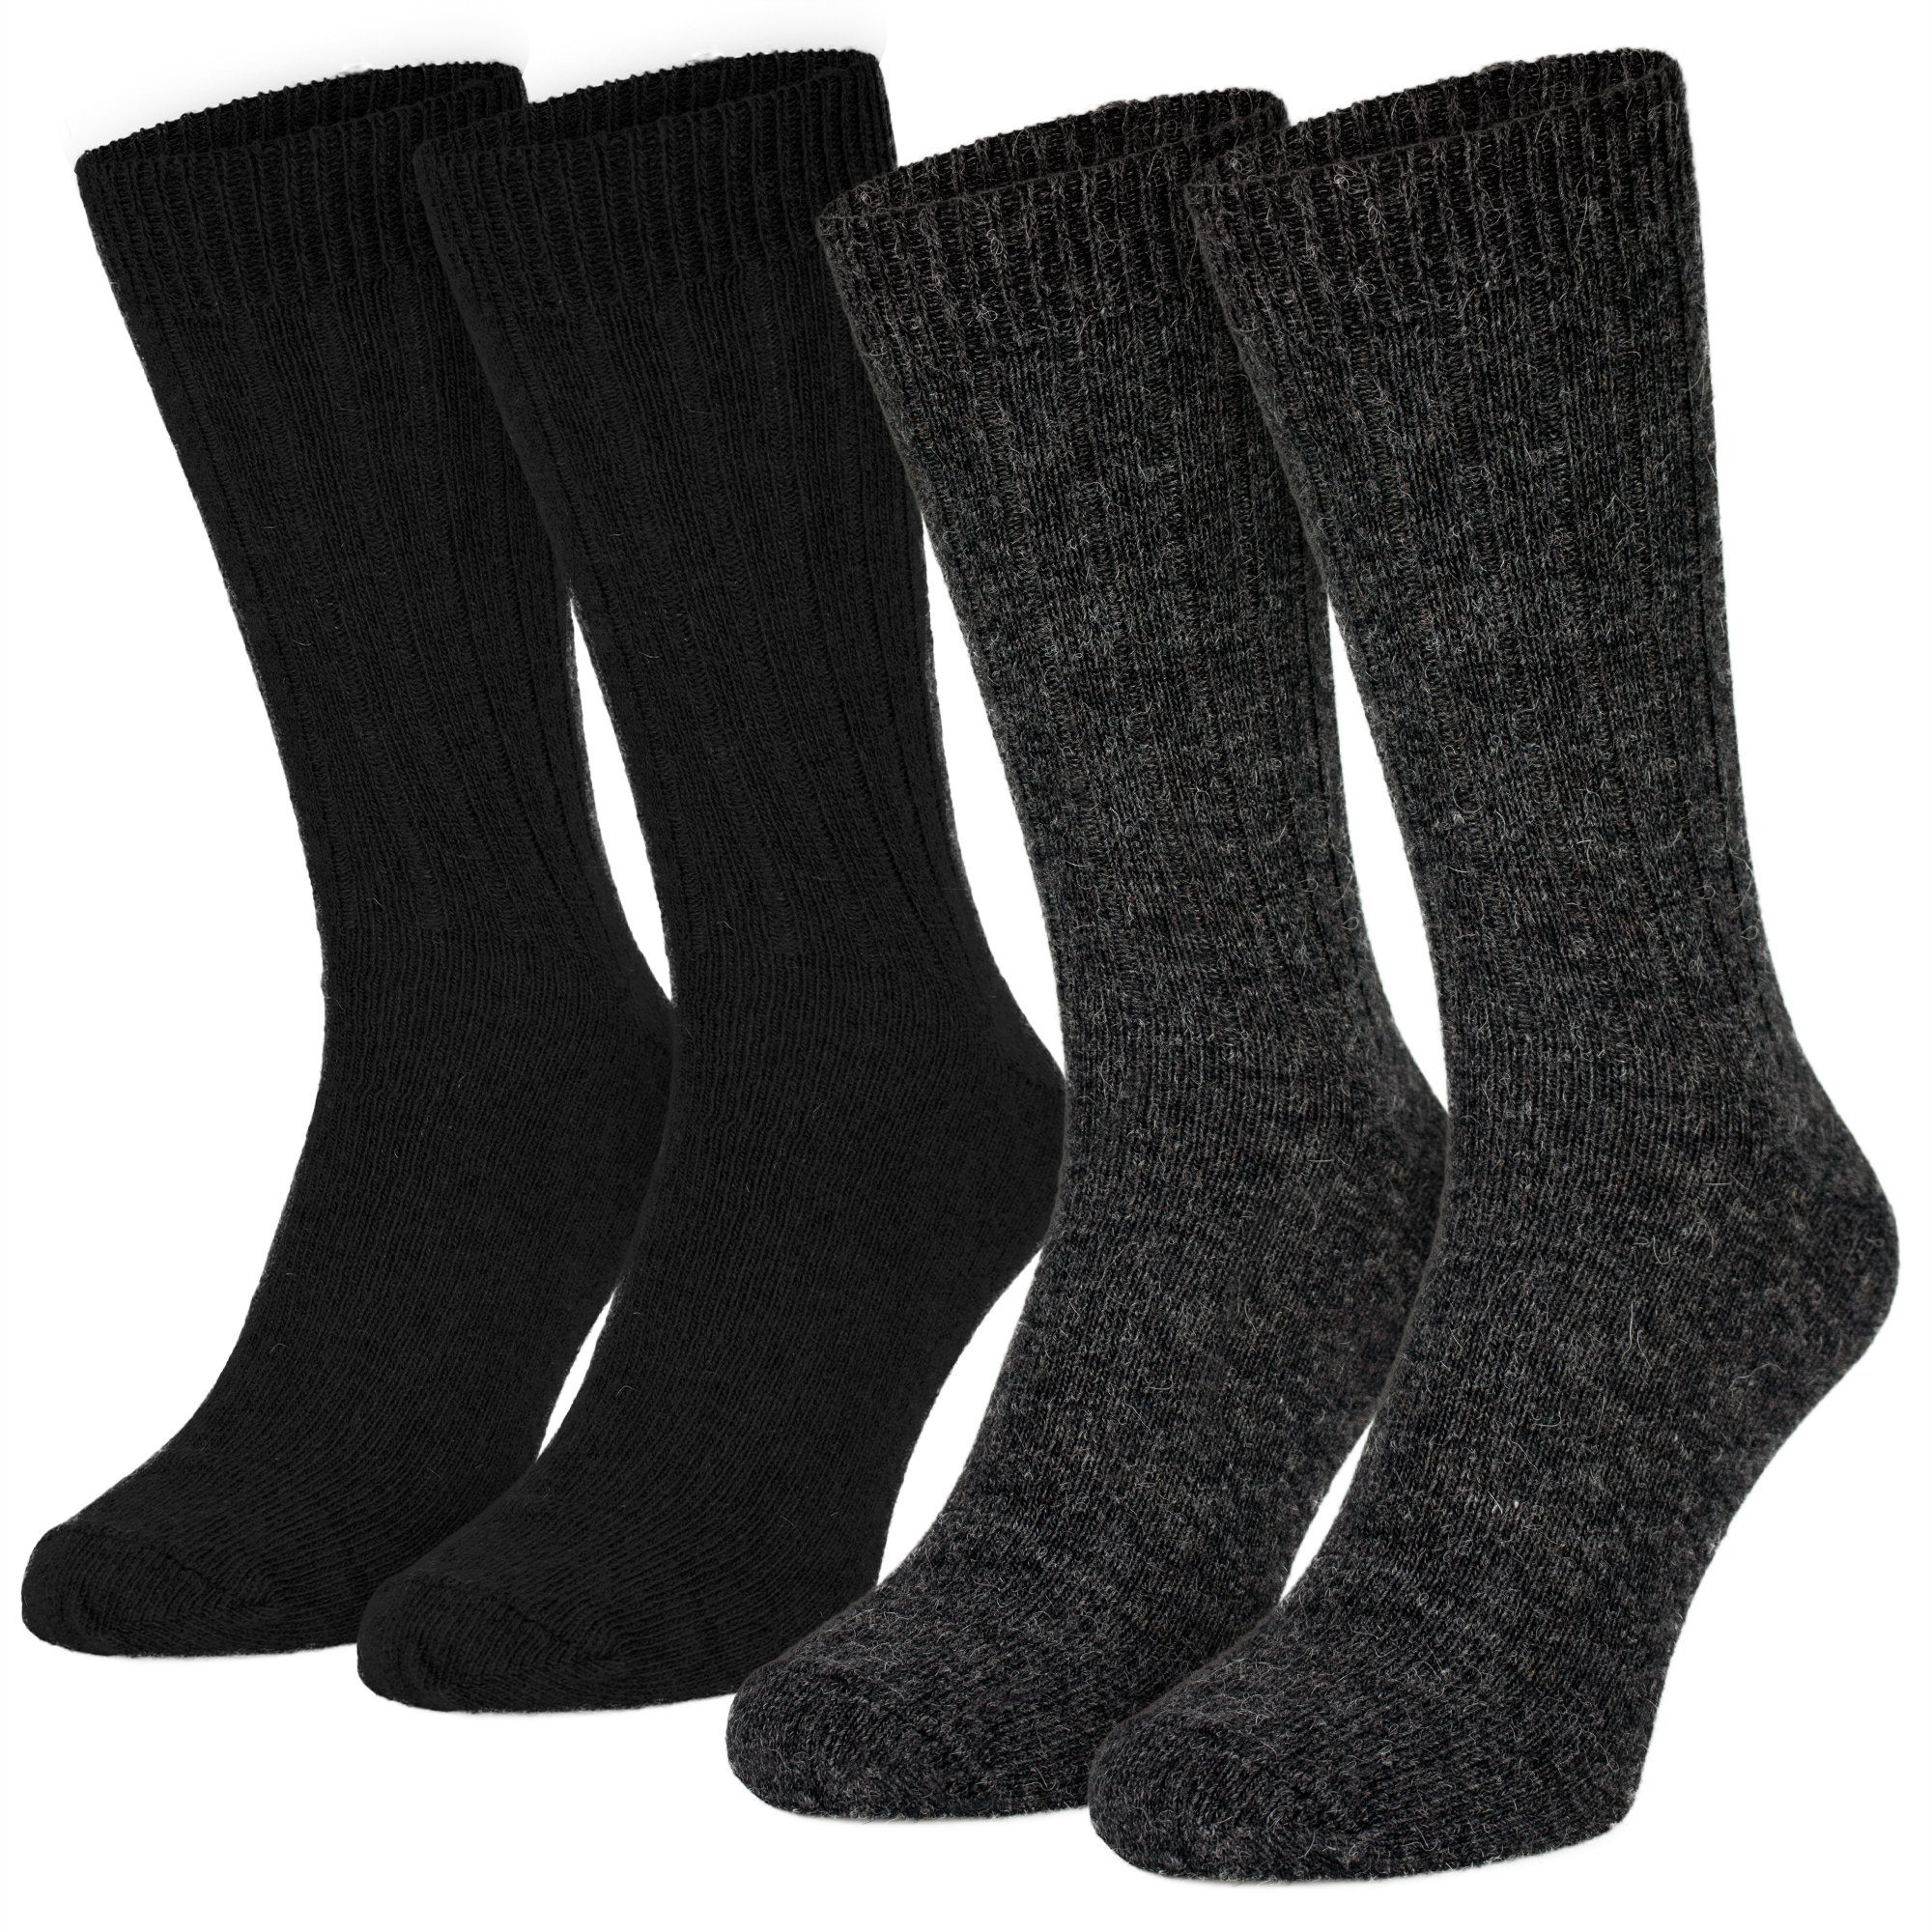 Black Snake Socken 2 Paar warme Socken aus Schafwolle mit Alpaka (2-Paar) schwarz-anthrazit